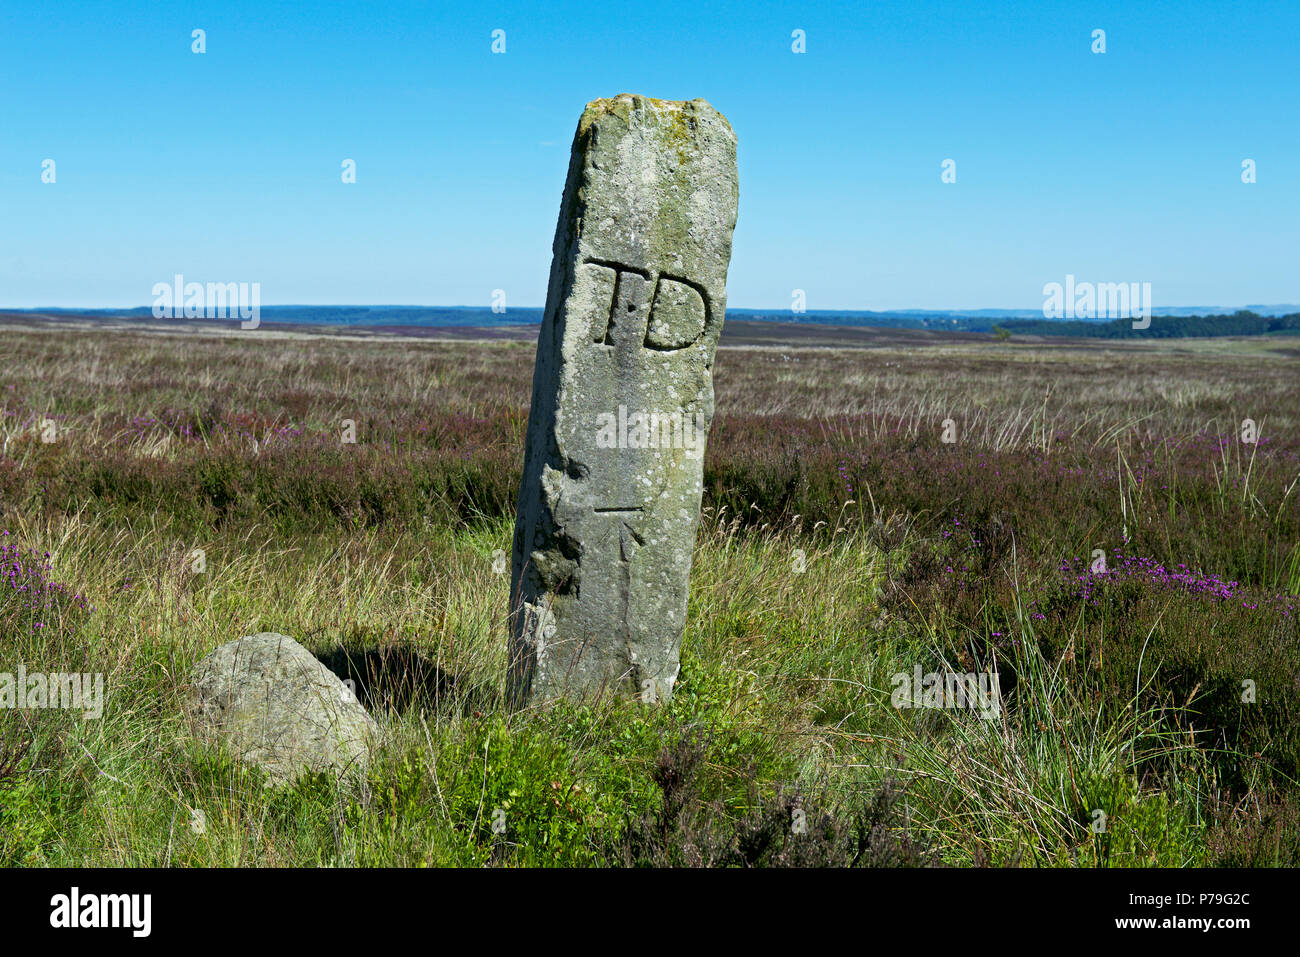 Bounday stone marked with TD (Thomas Duncombe), Rosedale, North York Moors National Park, North Yorkshire, England UK Stock Photo